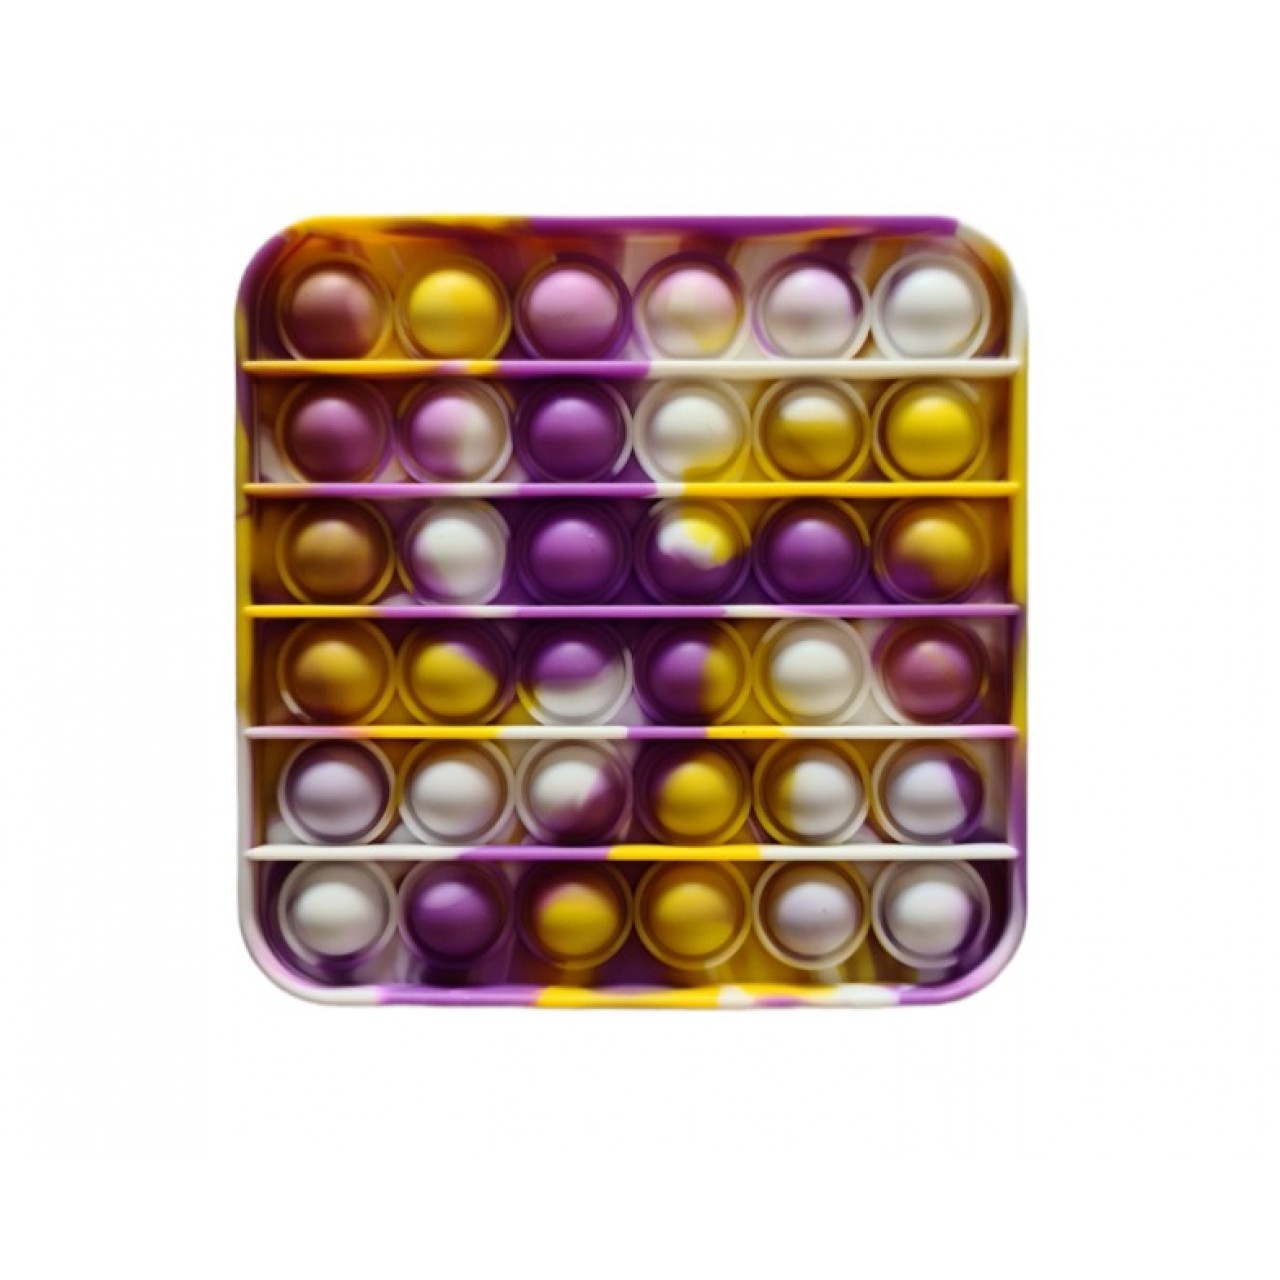 POP IT Fidget Anti Stress Bubble Αγχολυτικό Παιχνίδι Τετράγωνο - 5209 - Λευκό Μωβ Κίτρινο